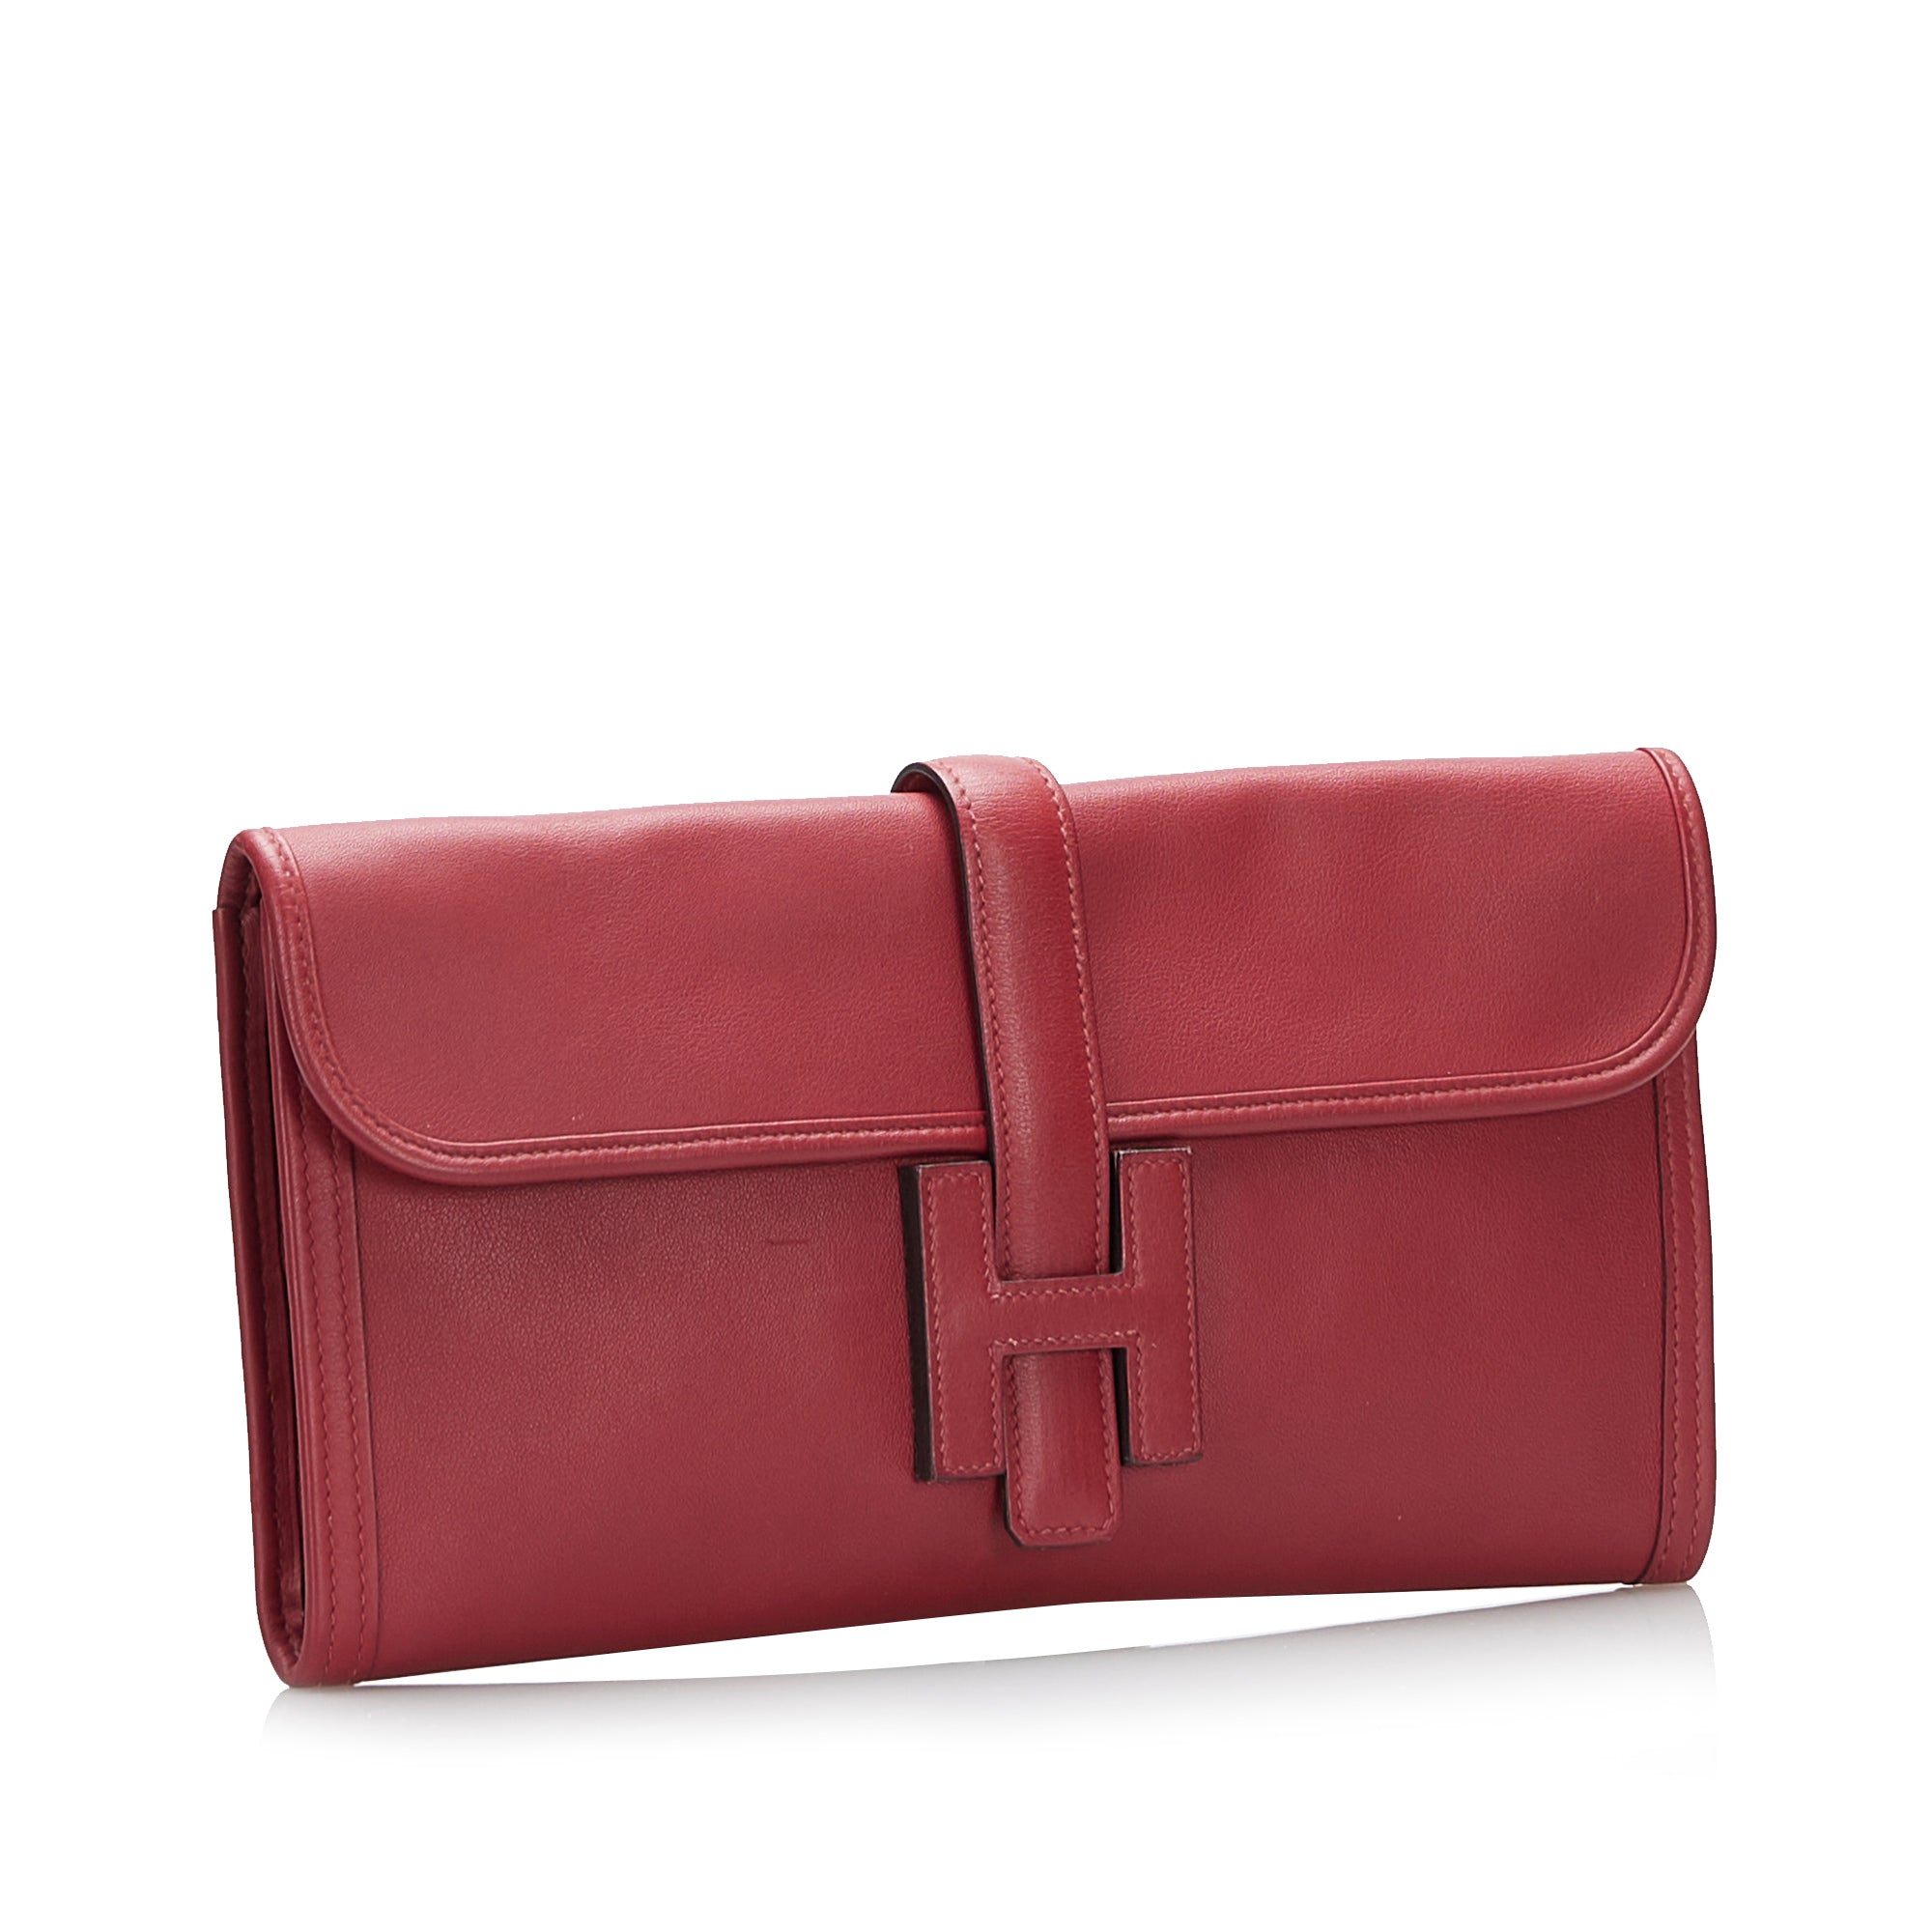 Red Hermes Swift Jige Elan Clutch Bag – Designer Revival